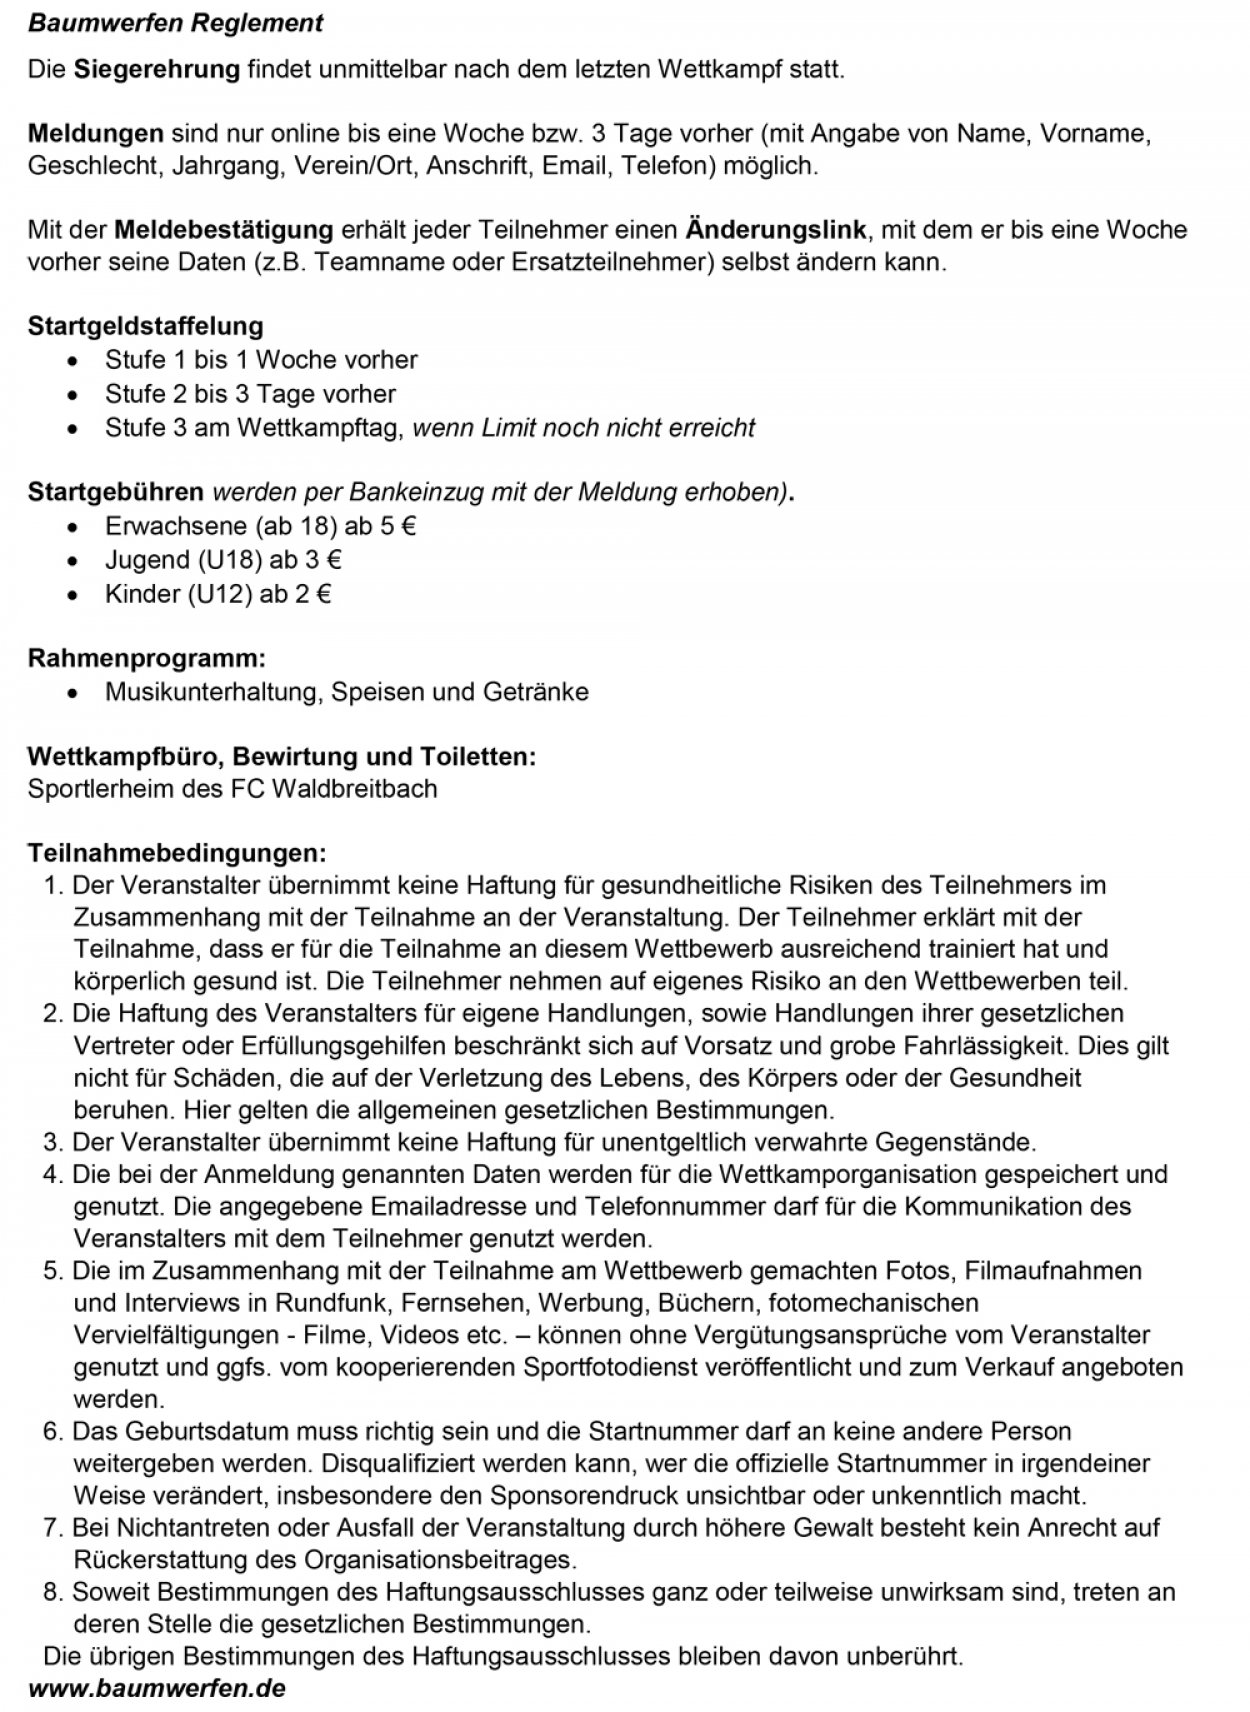 baumwerfen-reglement-stand-2023-02-b.jpg